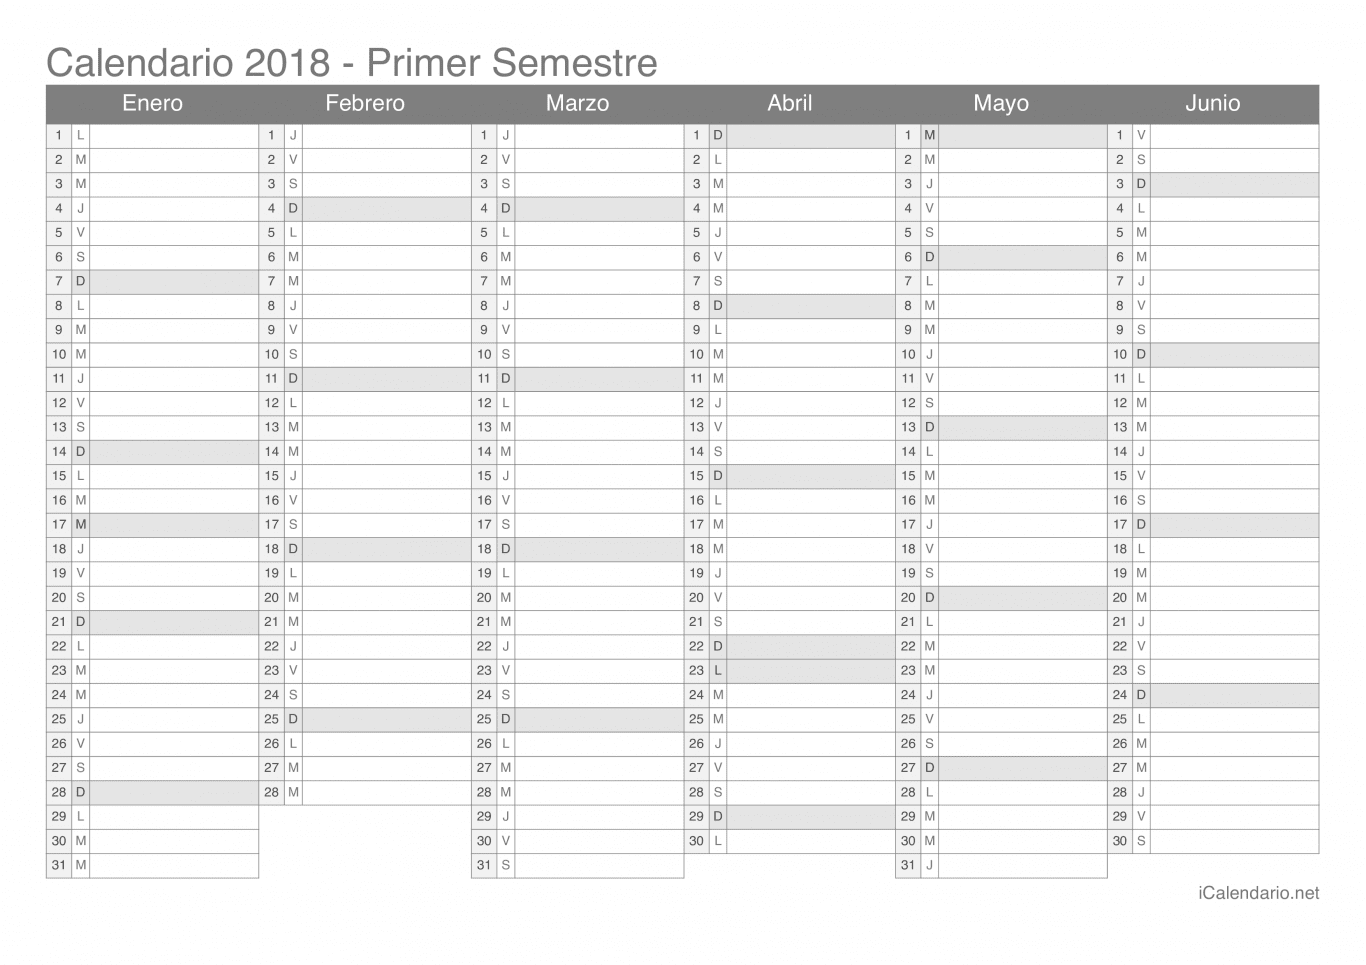 Calendario por semestre 2018